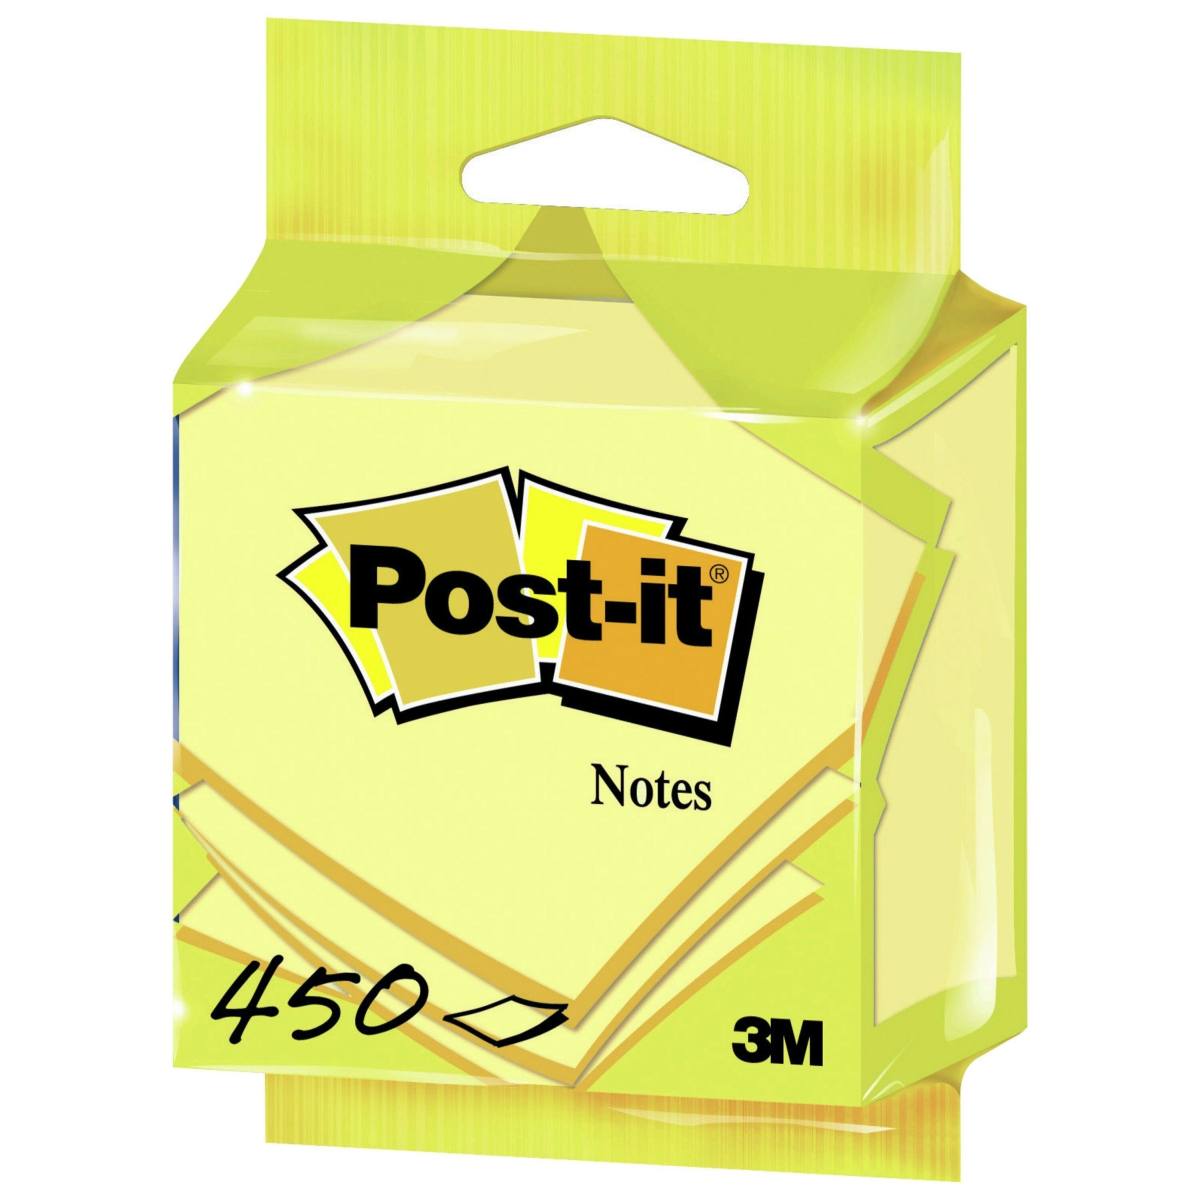 3M Post-it Würfel 5426GB, 76 mm x 76 mm, gelb, 1 Würfel à 450 Blatt